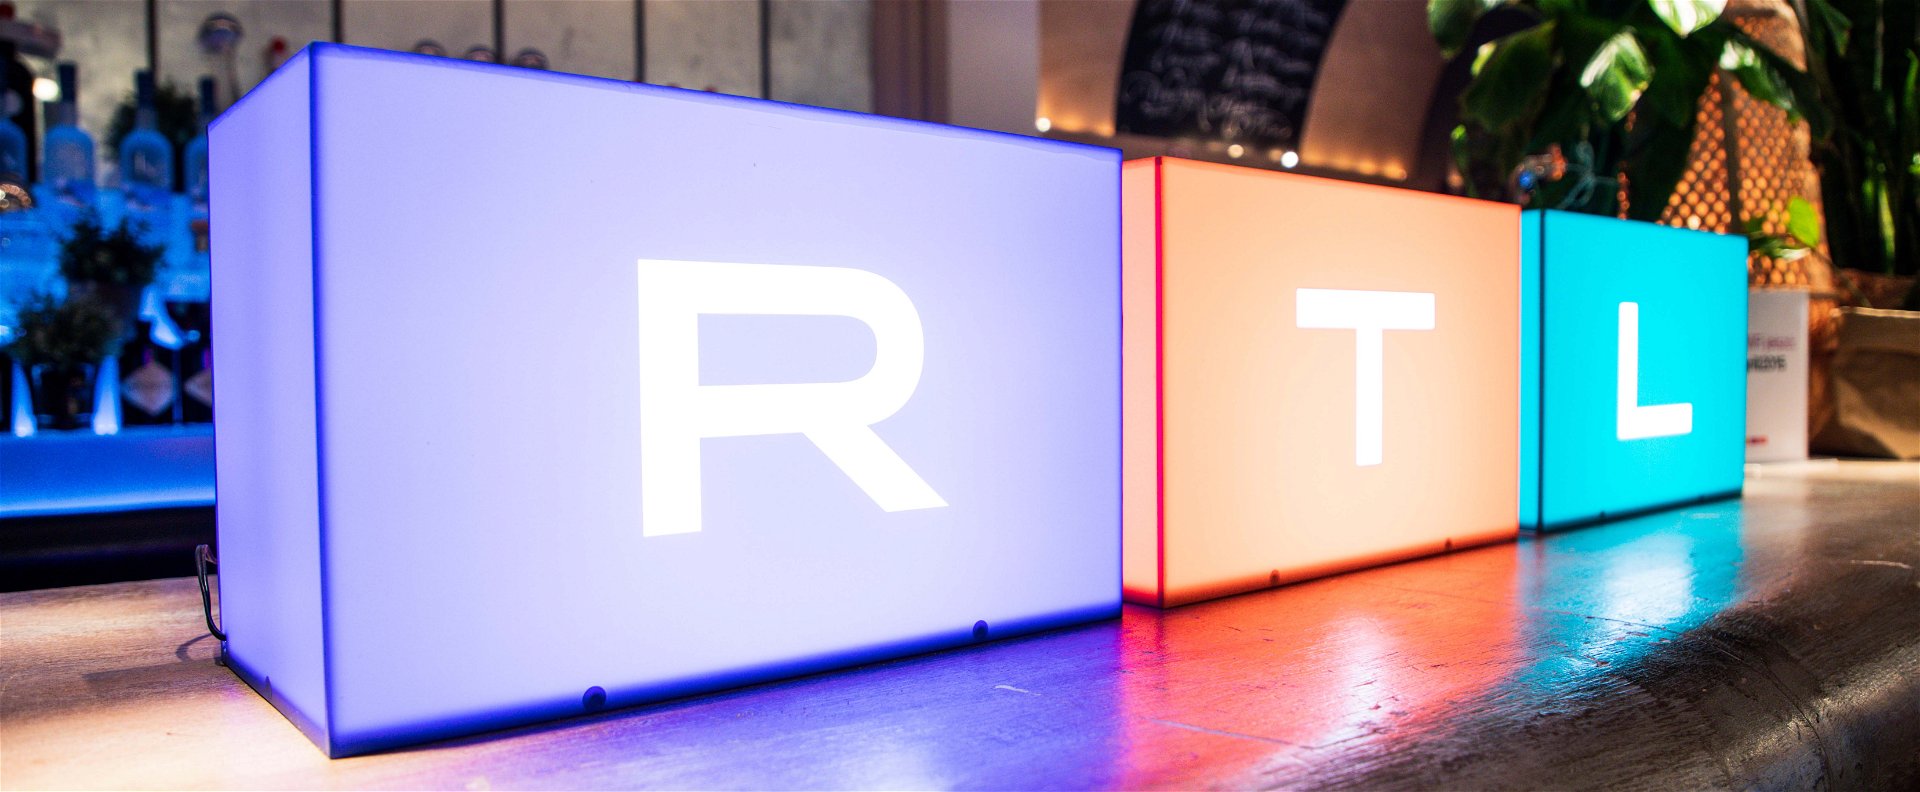 Rendkívüli műsorváltozás: az RTL és a TV2 is alaposan felborít mindent